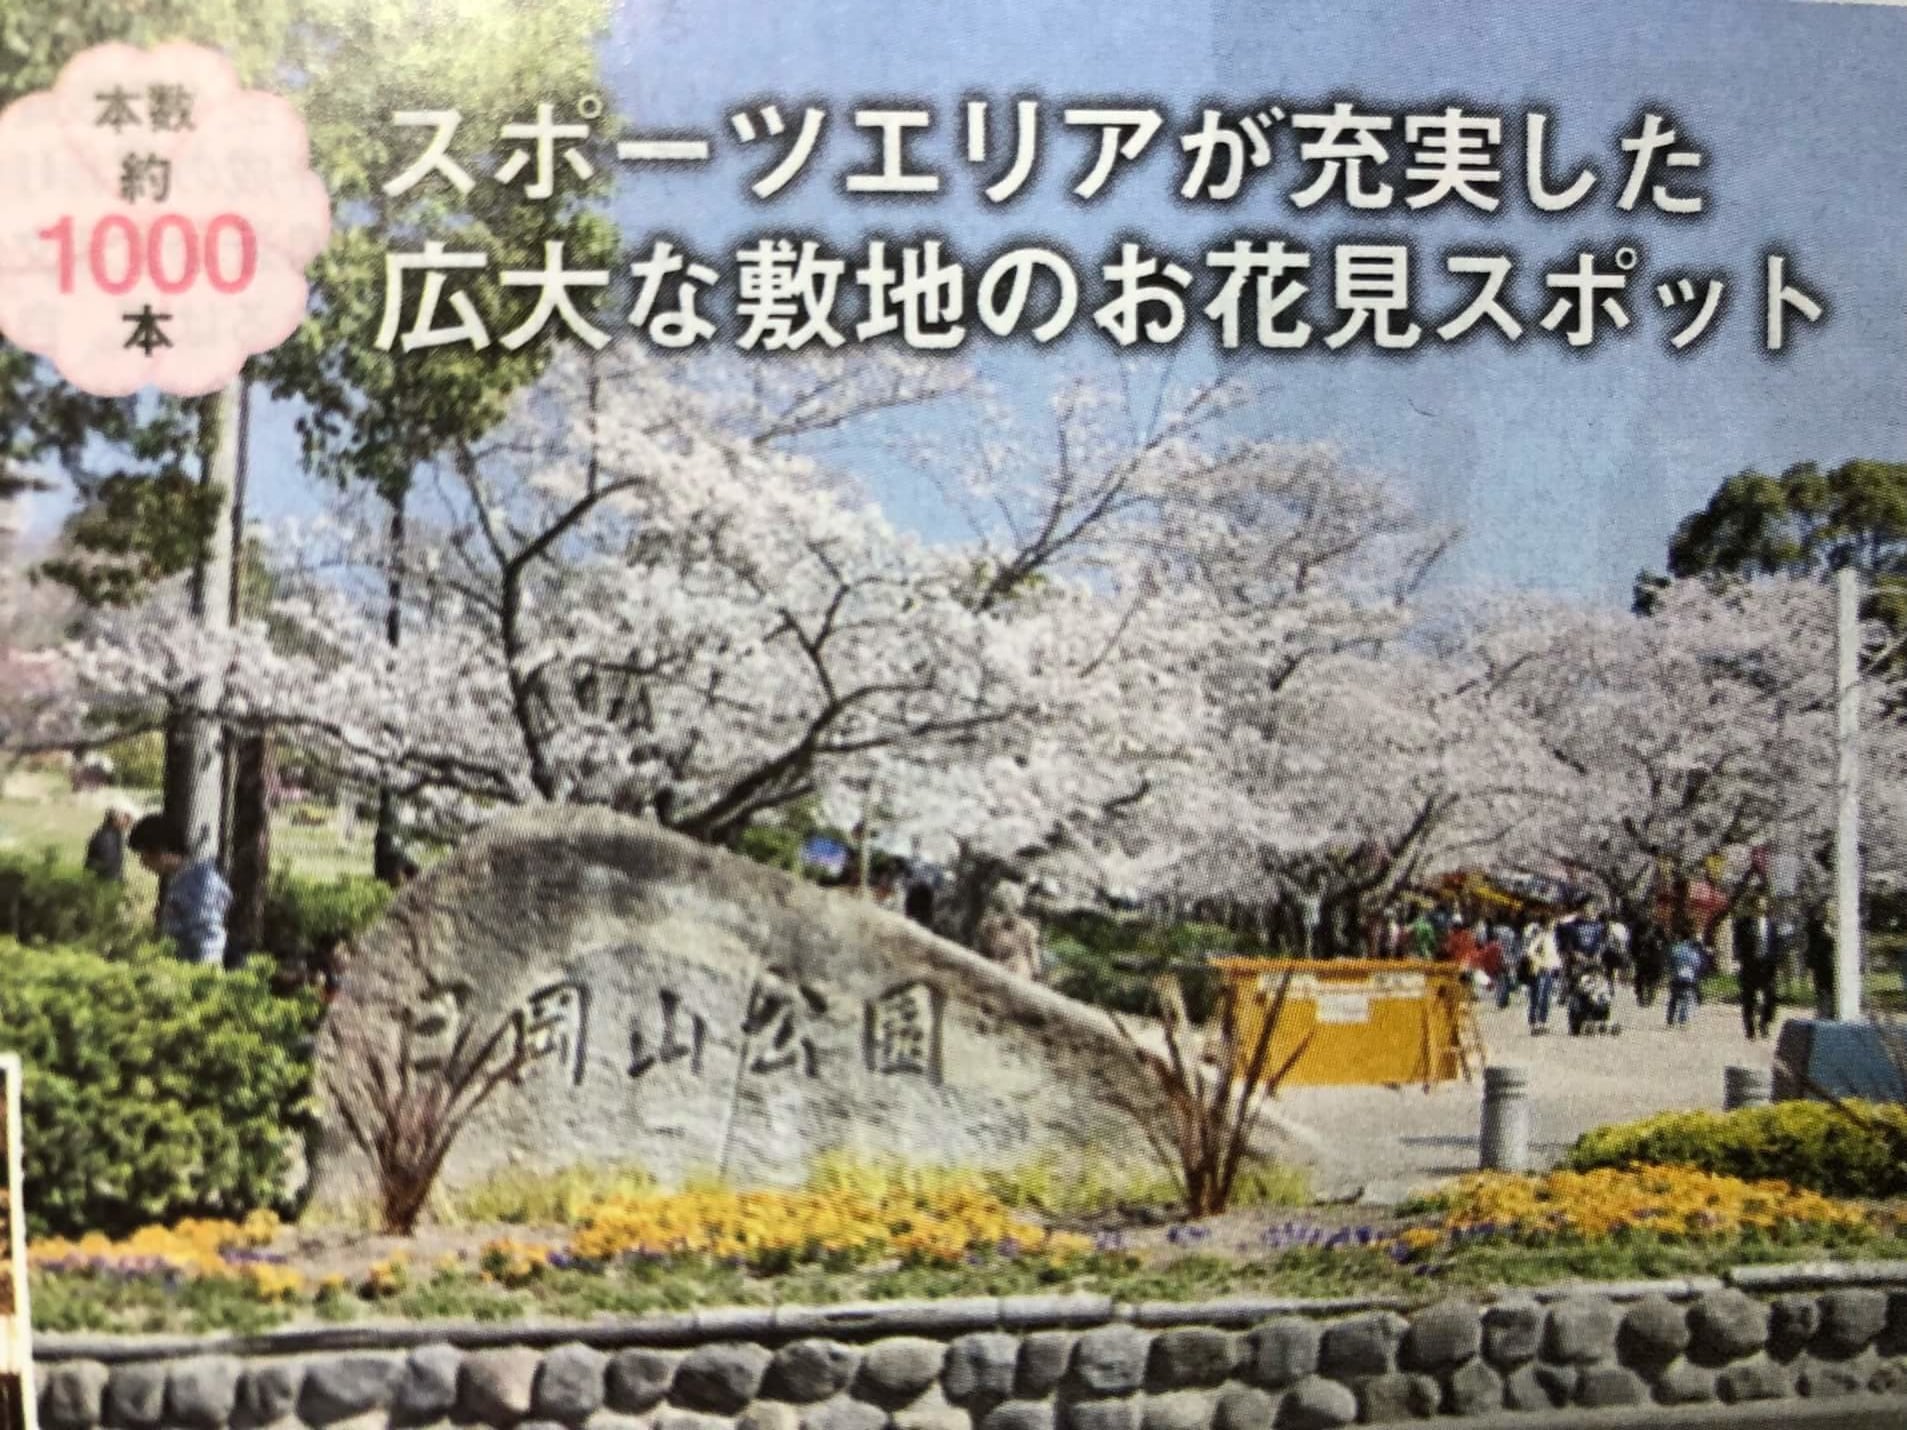 加古川市 桜開花まであと少し 1 000本超の桜は日岡山にあり 号外net 加古川市 高砂市